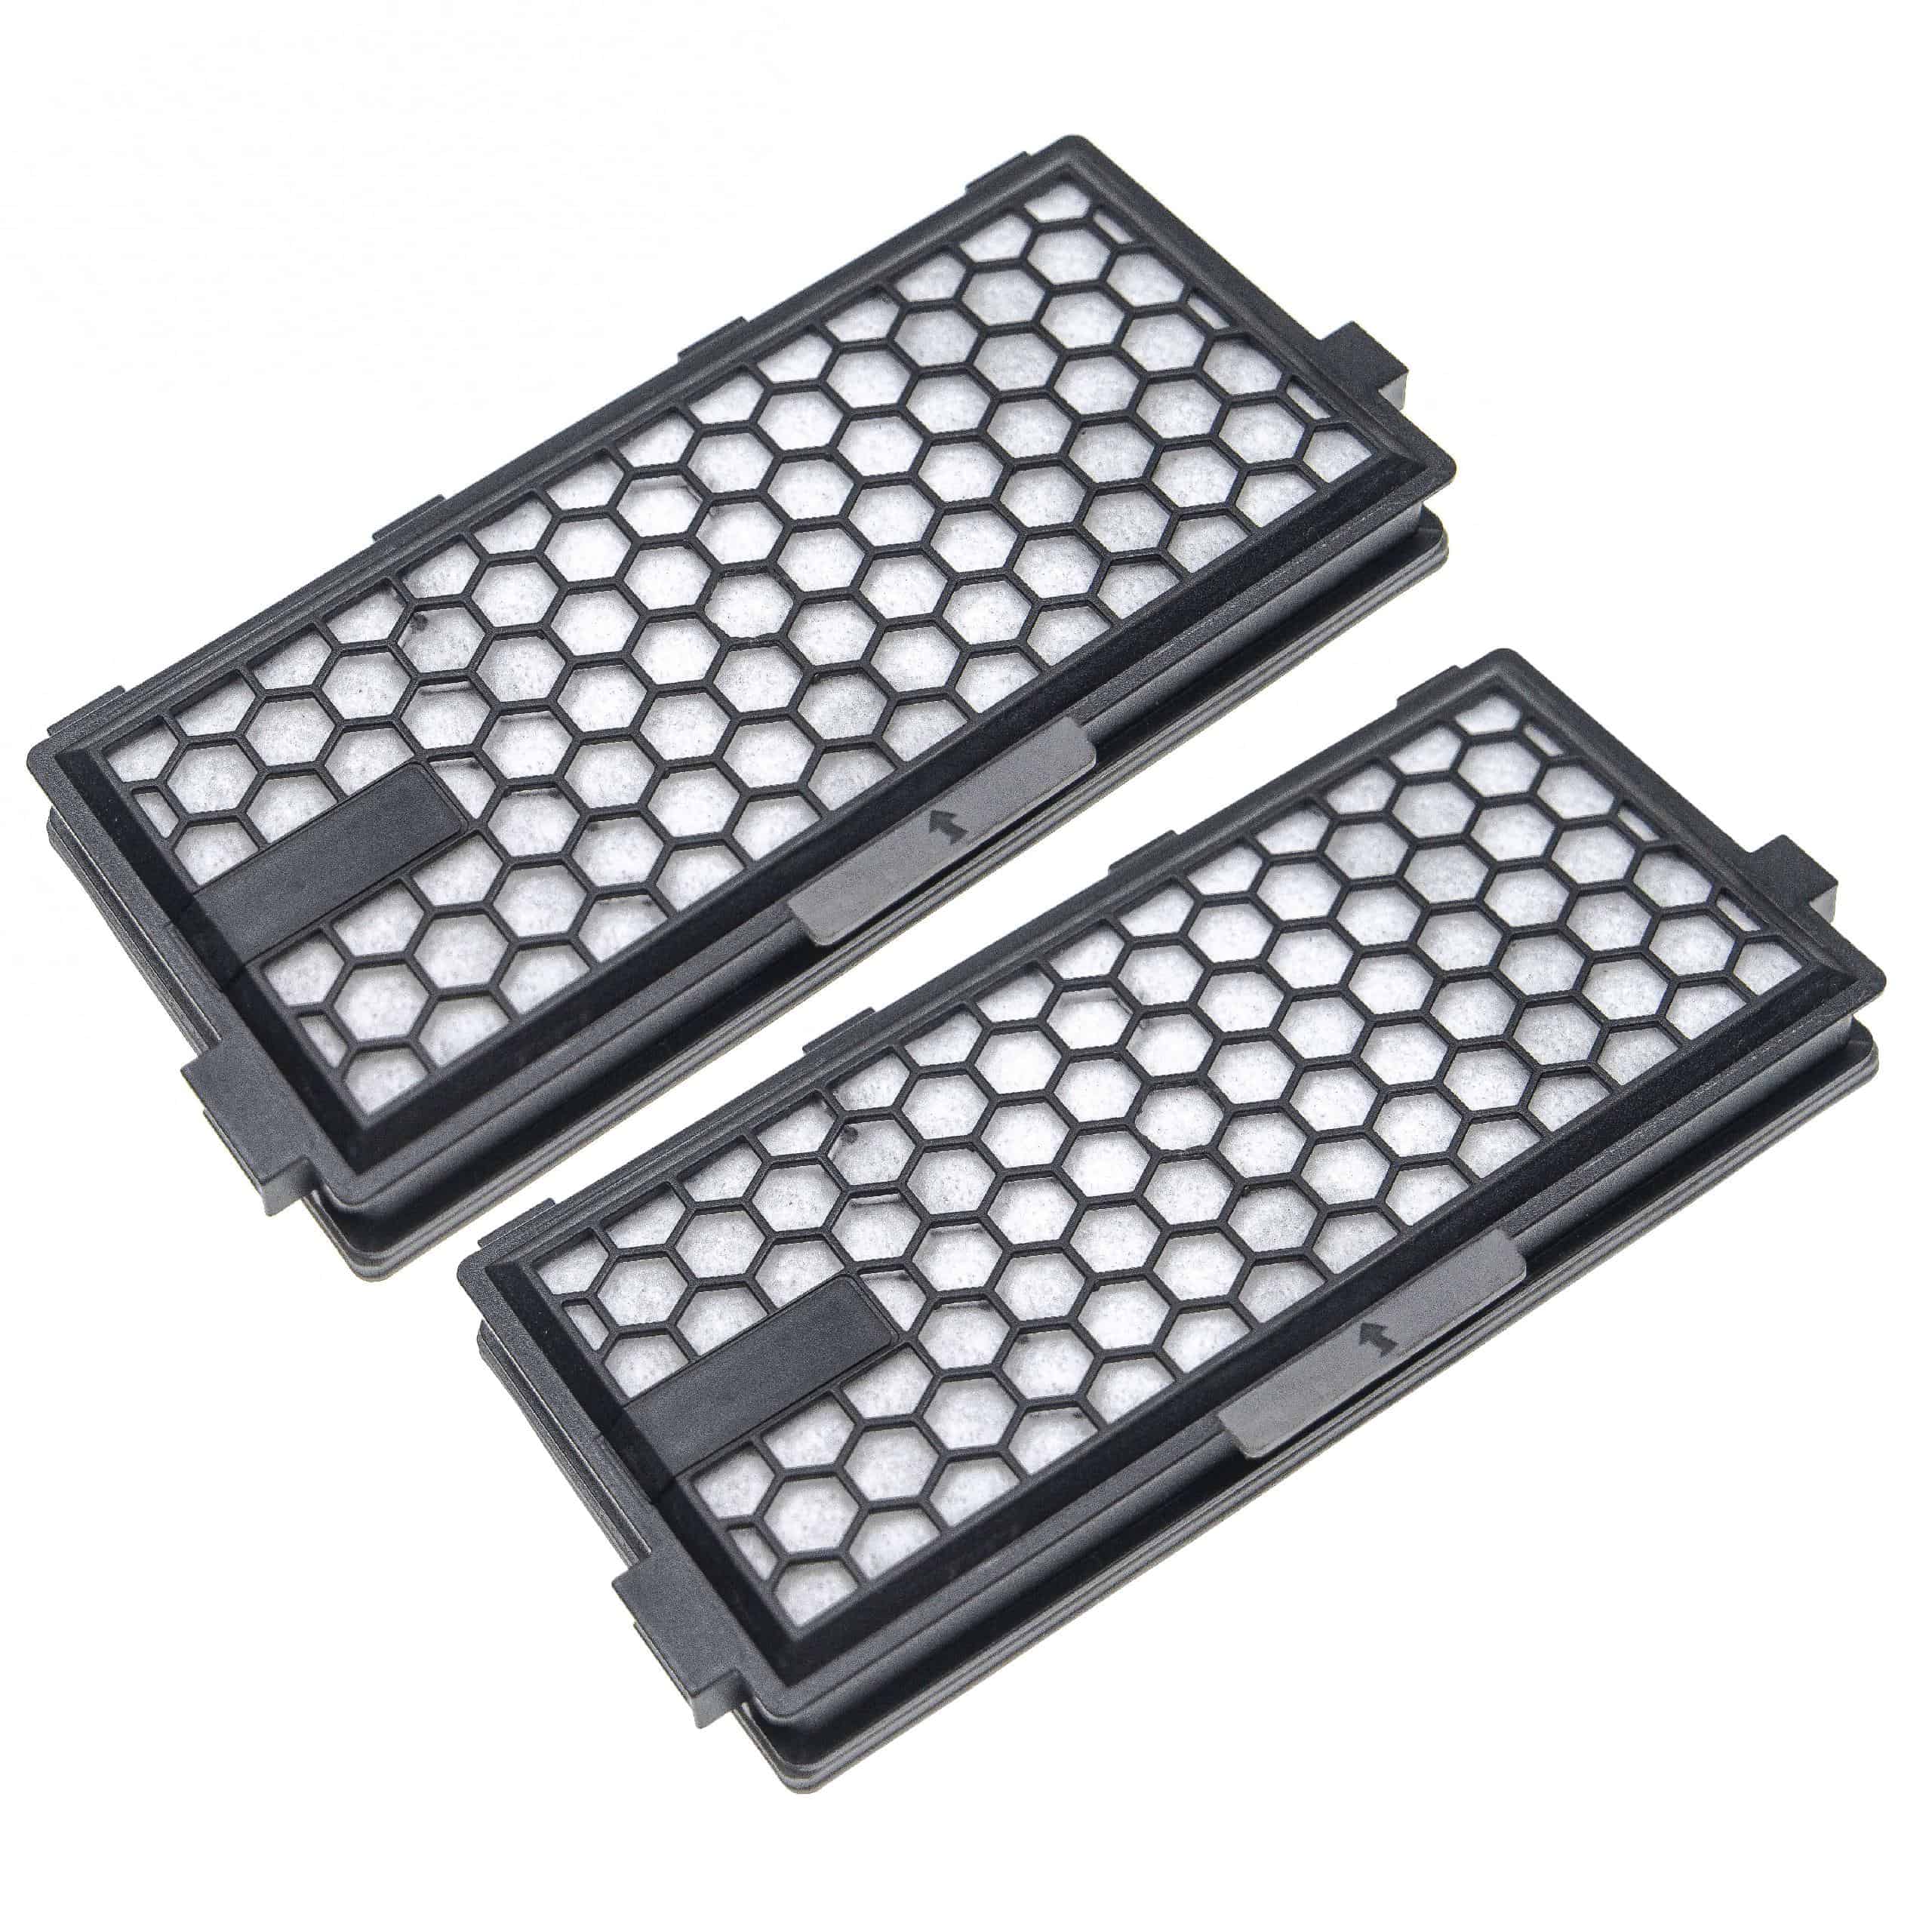 2x Filtro reemplaza Miele 5996880, 5996881 para aspiradora - filtro HEPA de carbón activo negro / blanco